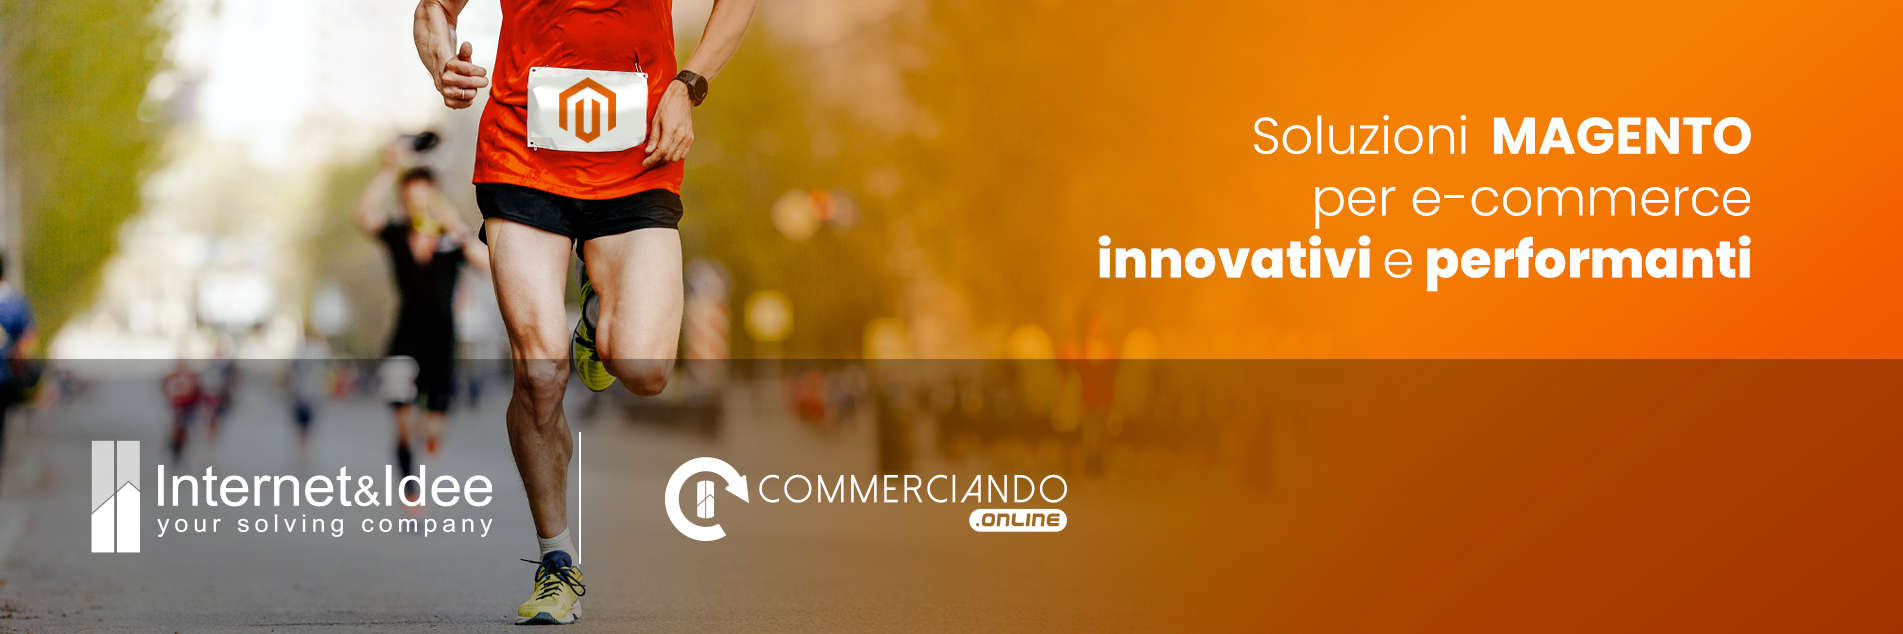 Soluzioni Magento per e-commerce innovativi e performanti